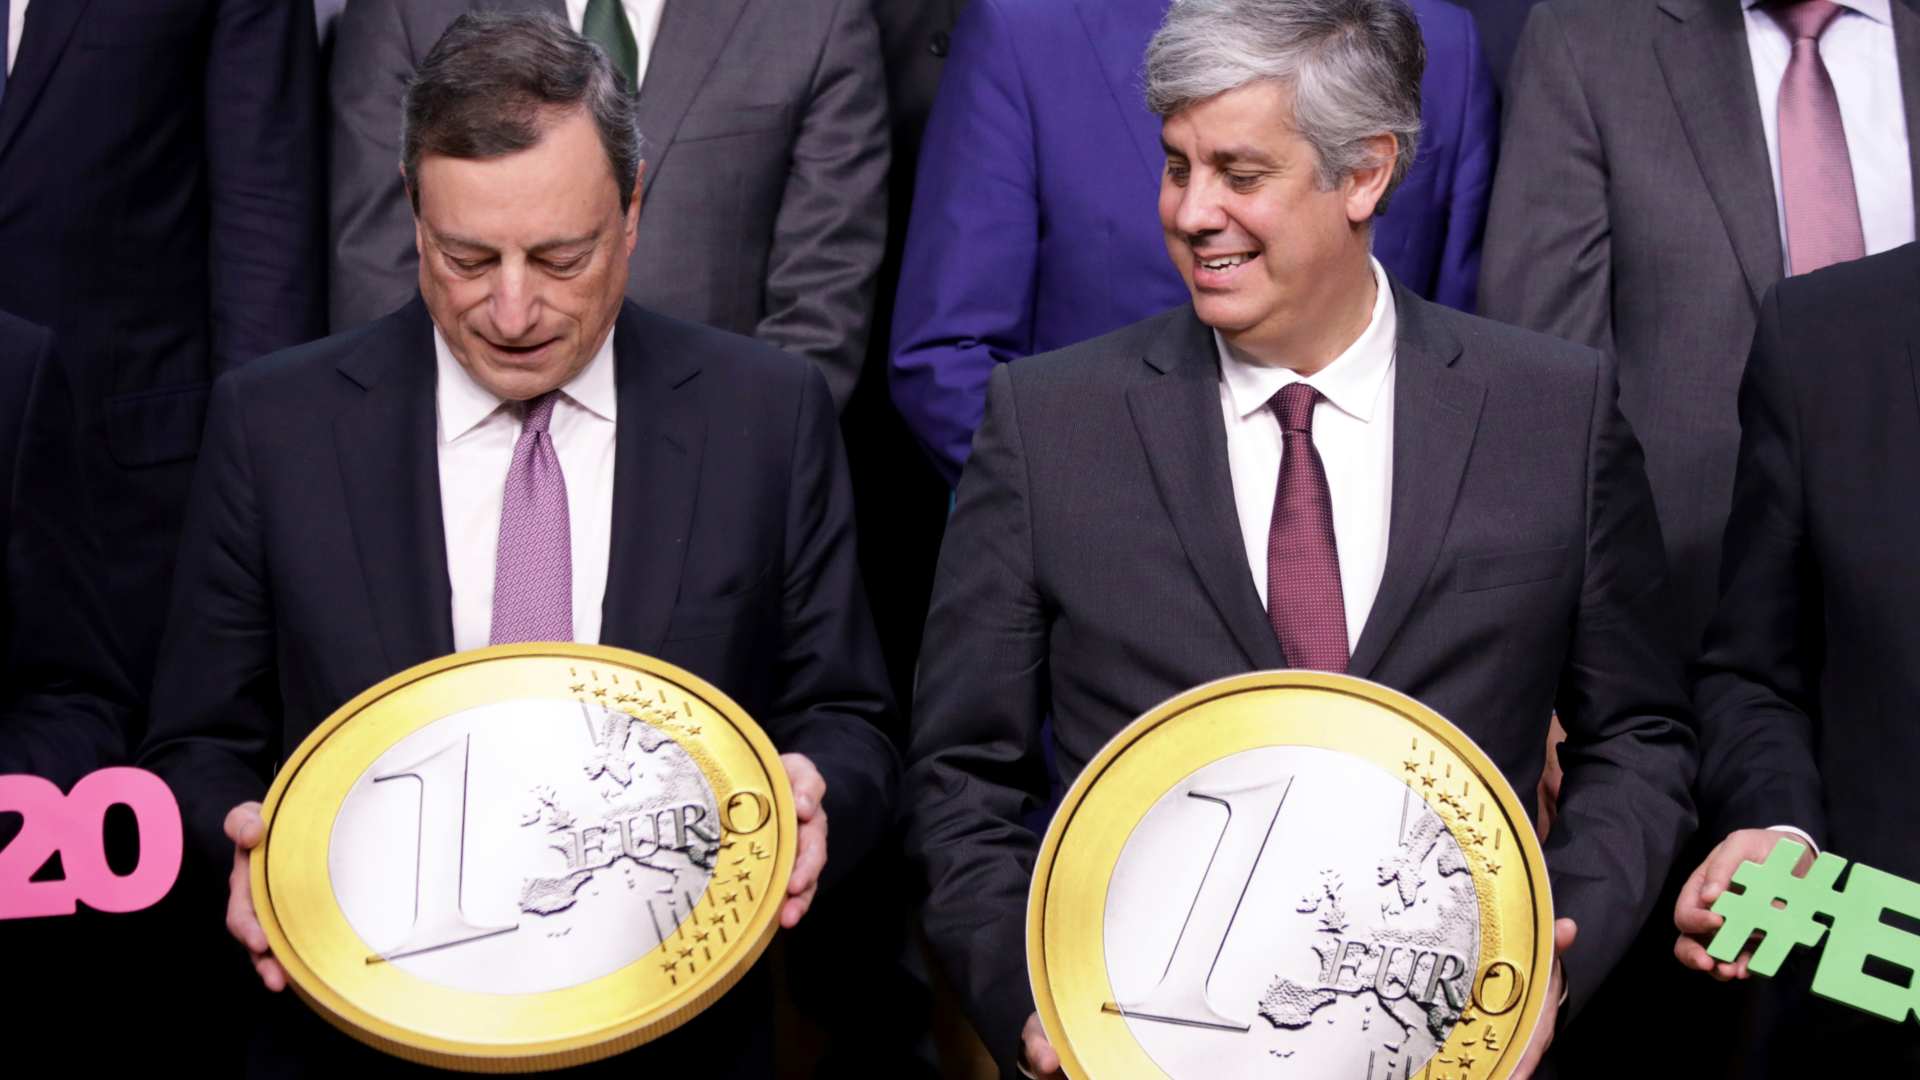 El euro, la ilusión de recuperar la soberanía y otros obstáculos